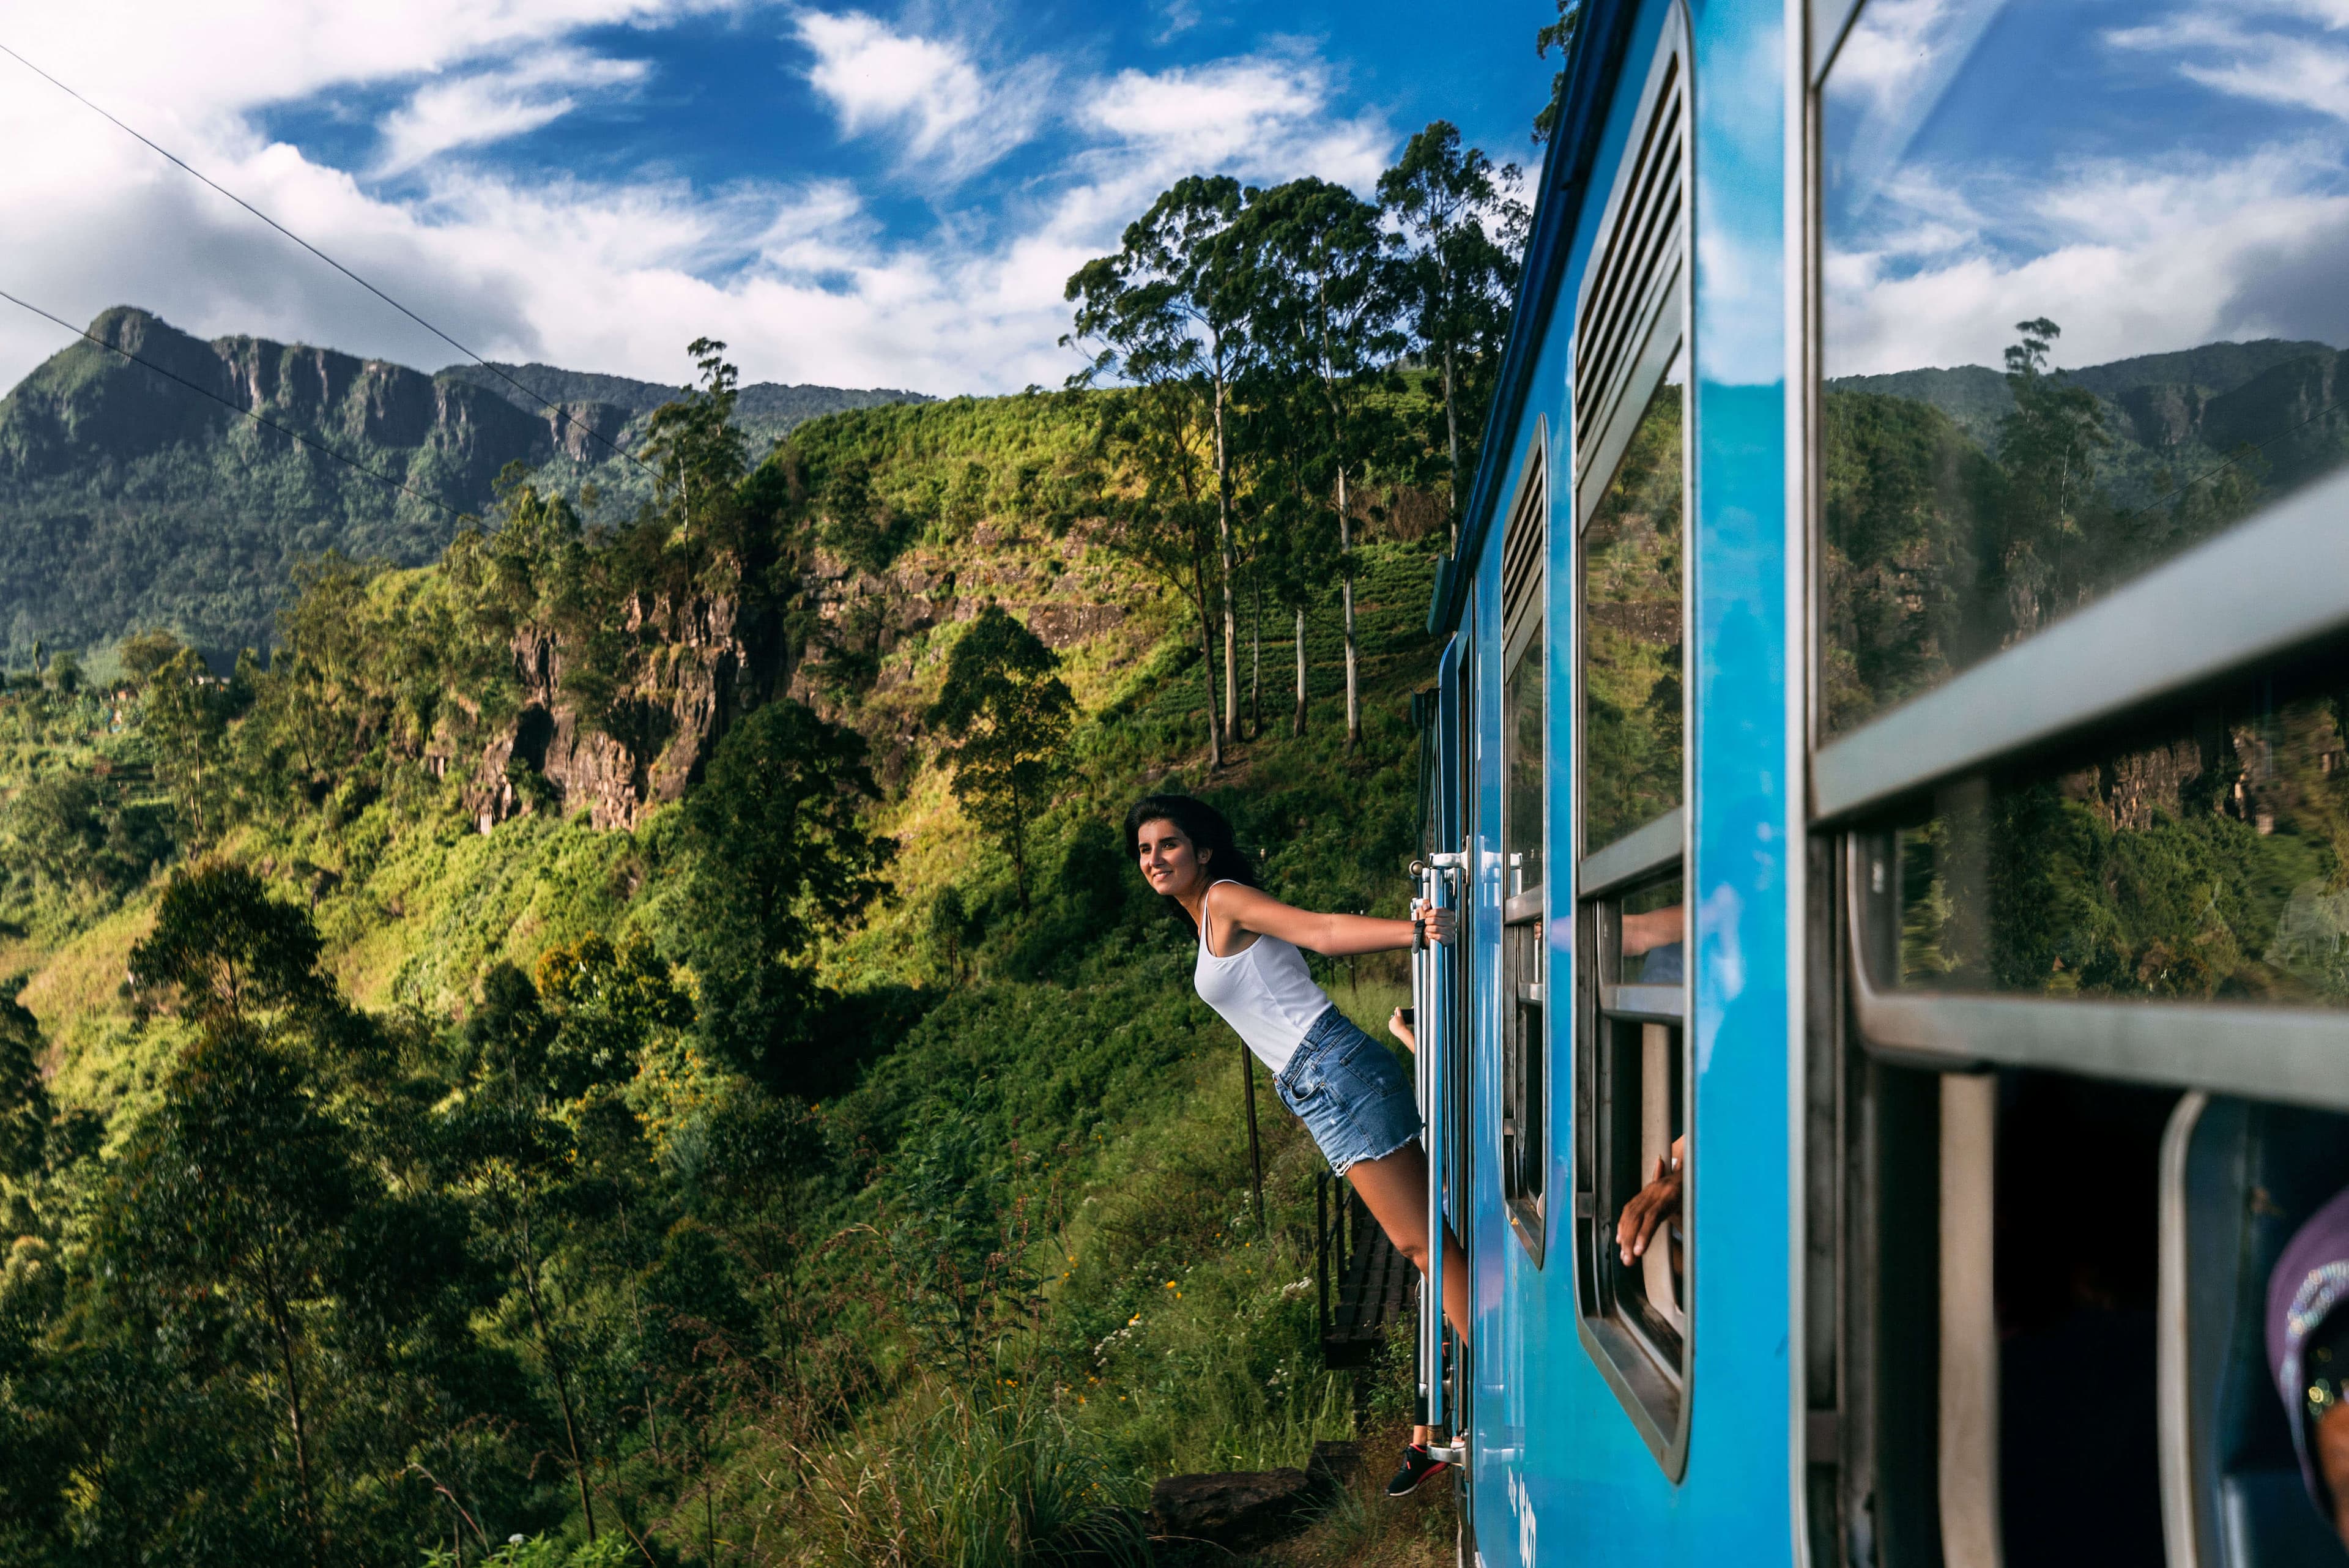 一个女孩在斯里兰卡的美丽火车之旅中获得了惊人的体验